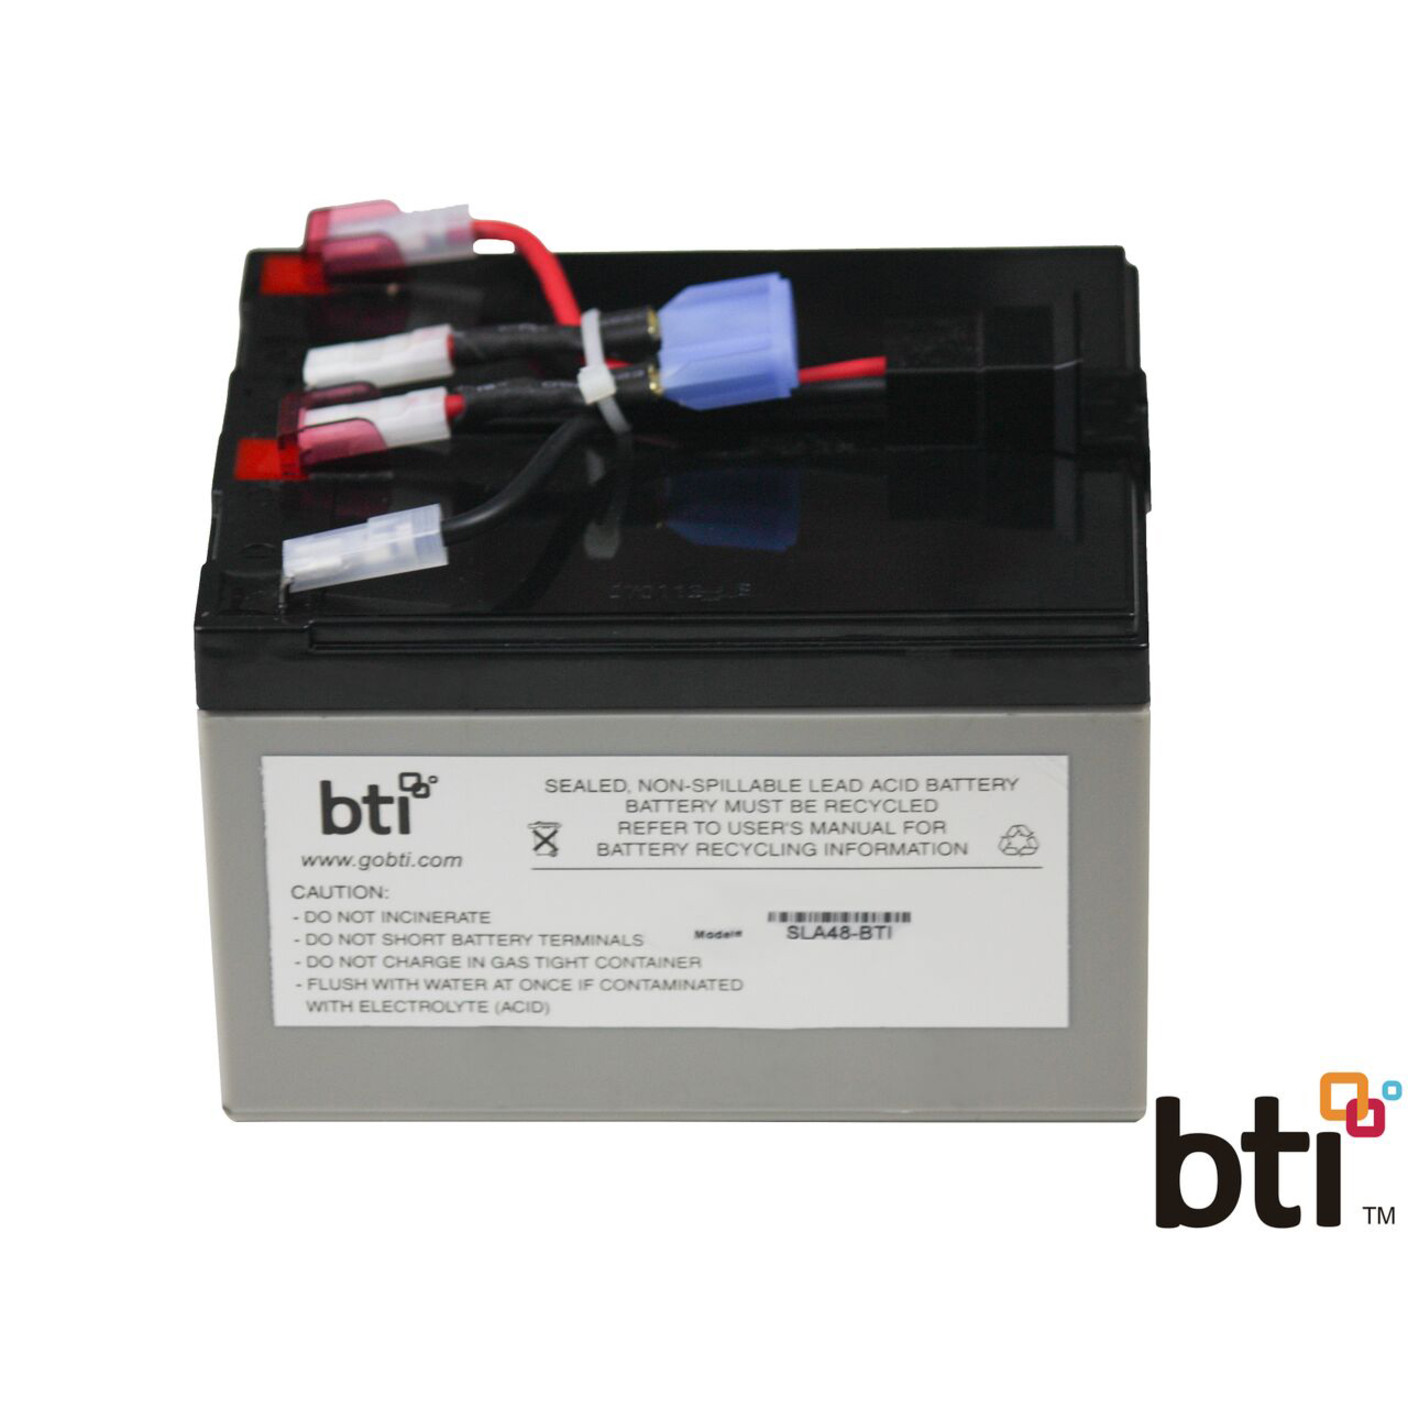 Battery Technology BTI Replacement  RBC48 for APCUPS Lead AcidCompatible with APC UPS SMT750C SMT750US SMT750I RBC48-SLA48-BTI